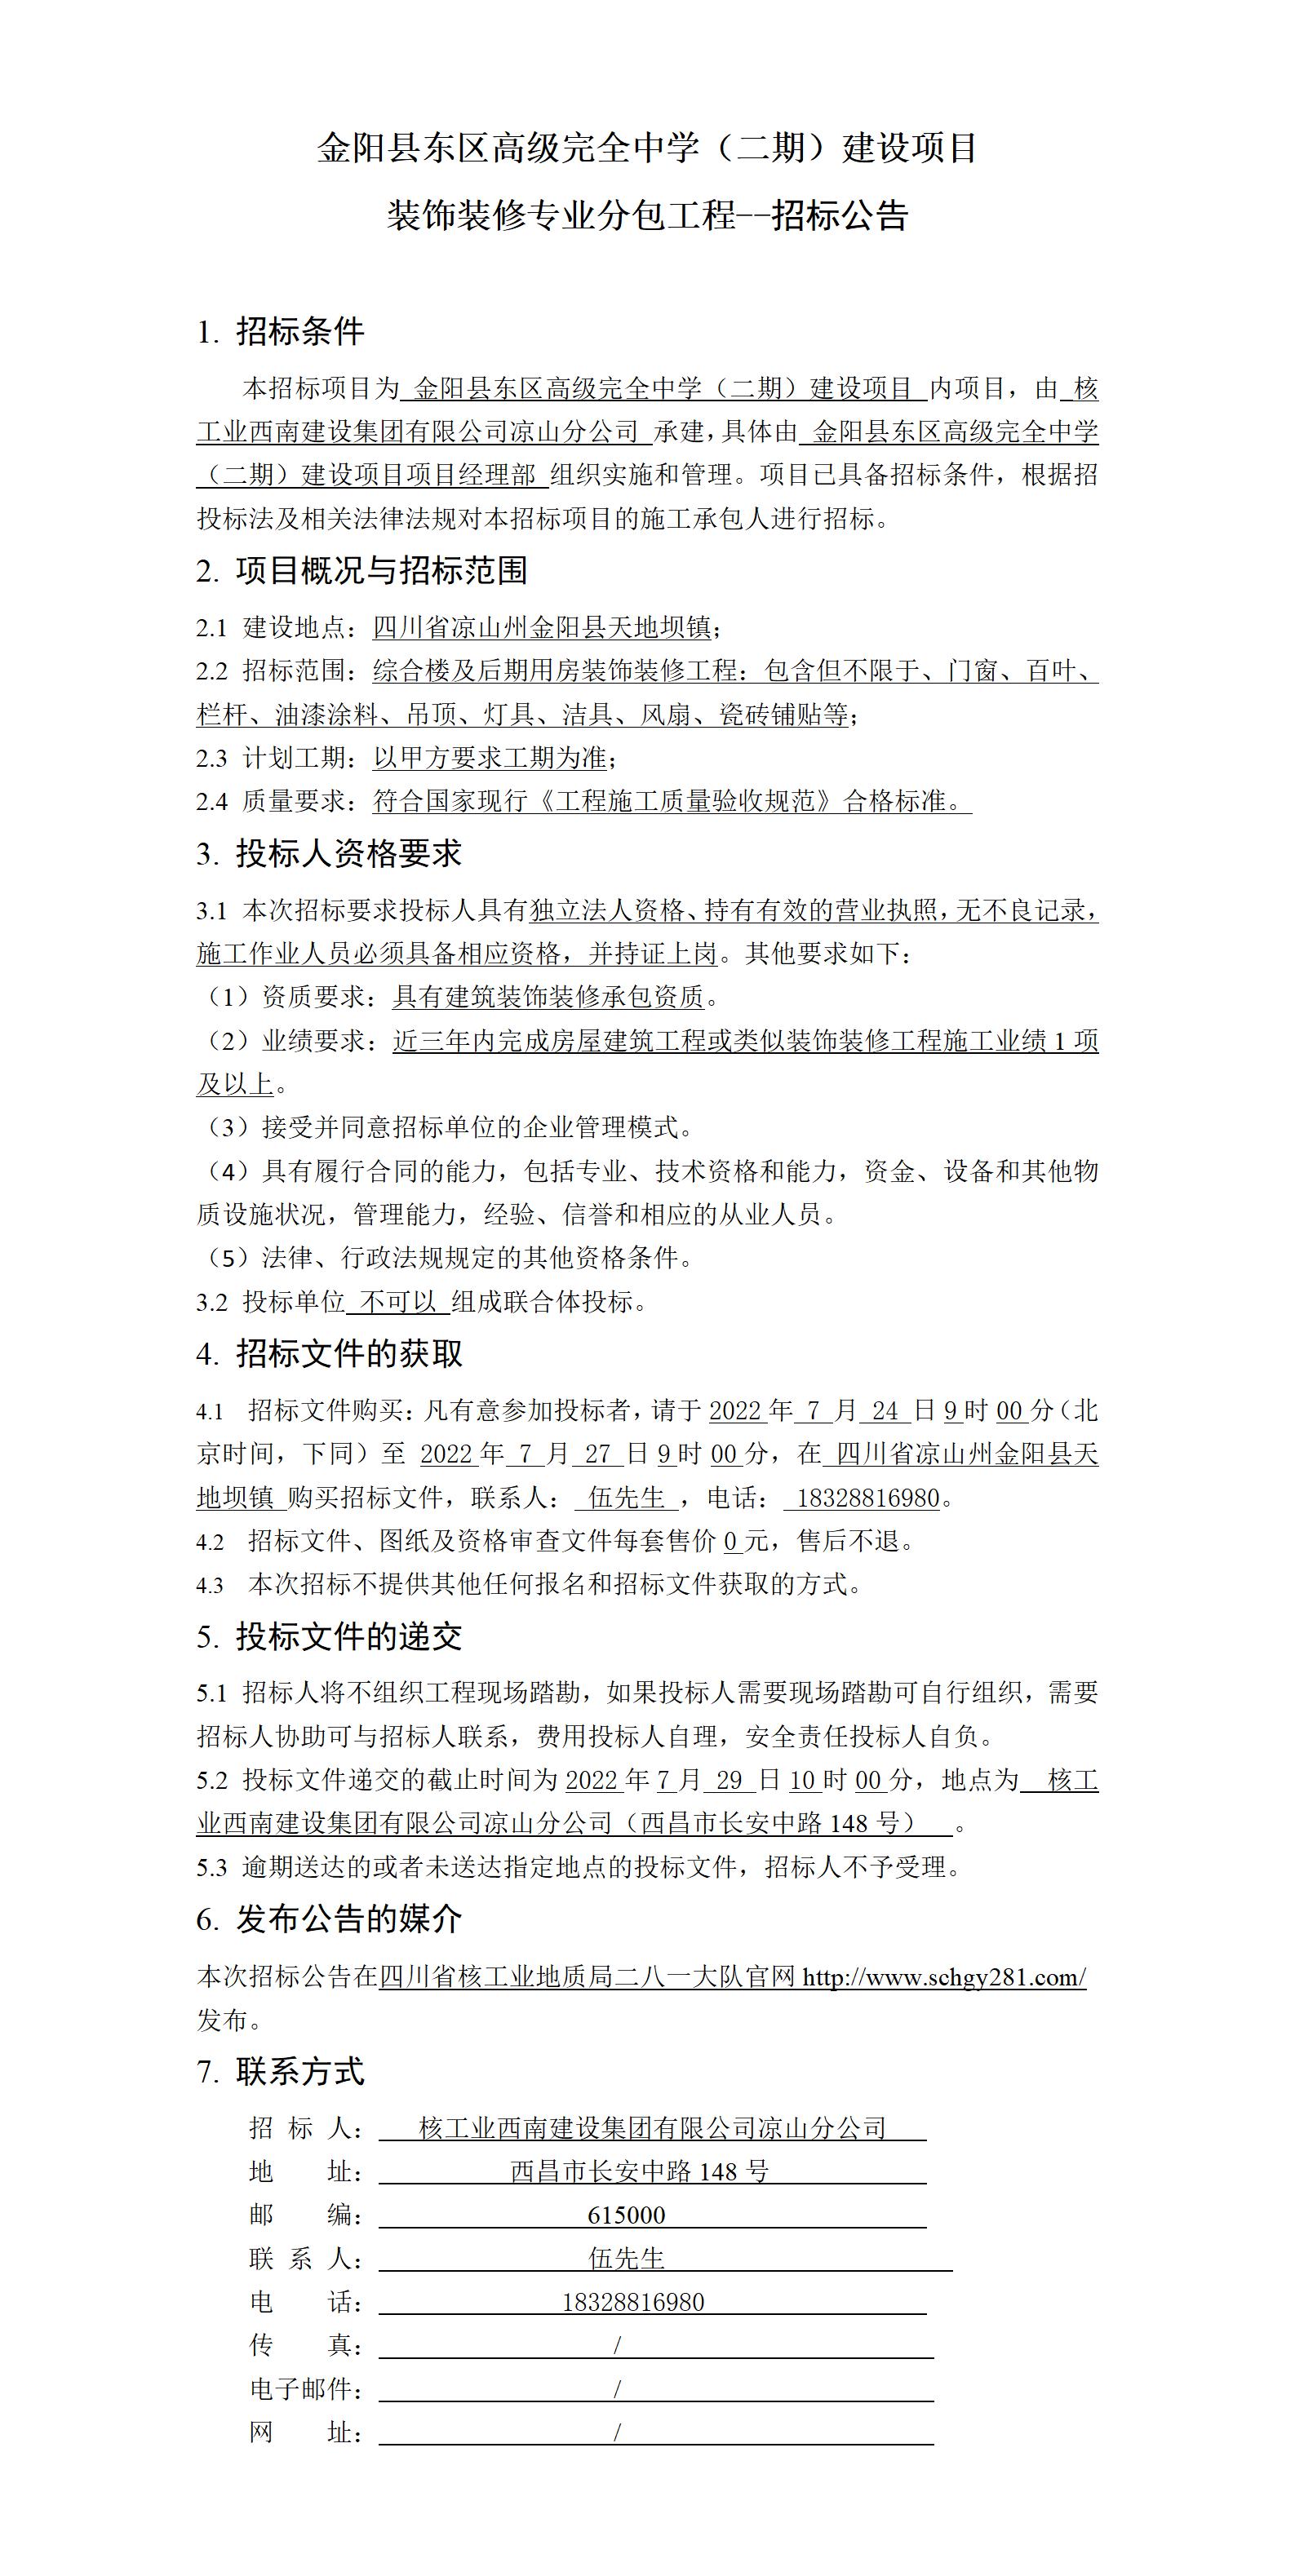 招标公告--金阳县东区高级完全中学（二期）建设项目装饰装修专业分包工程.jpg